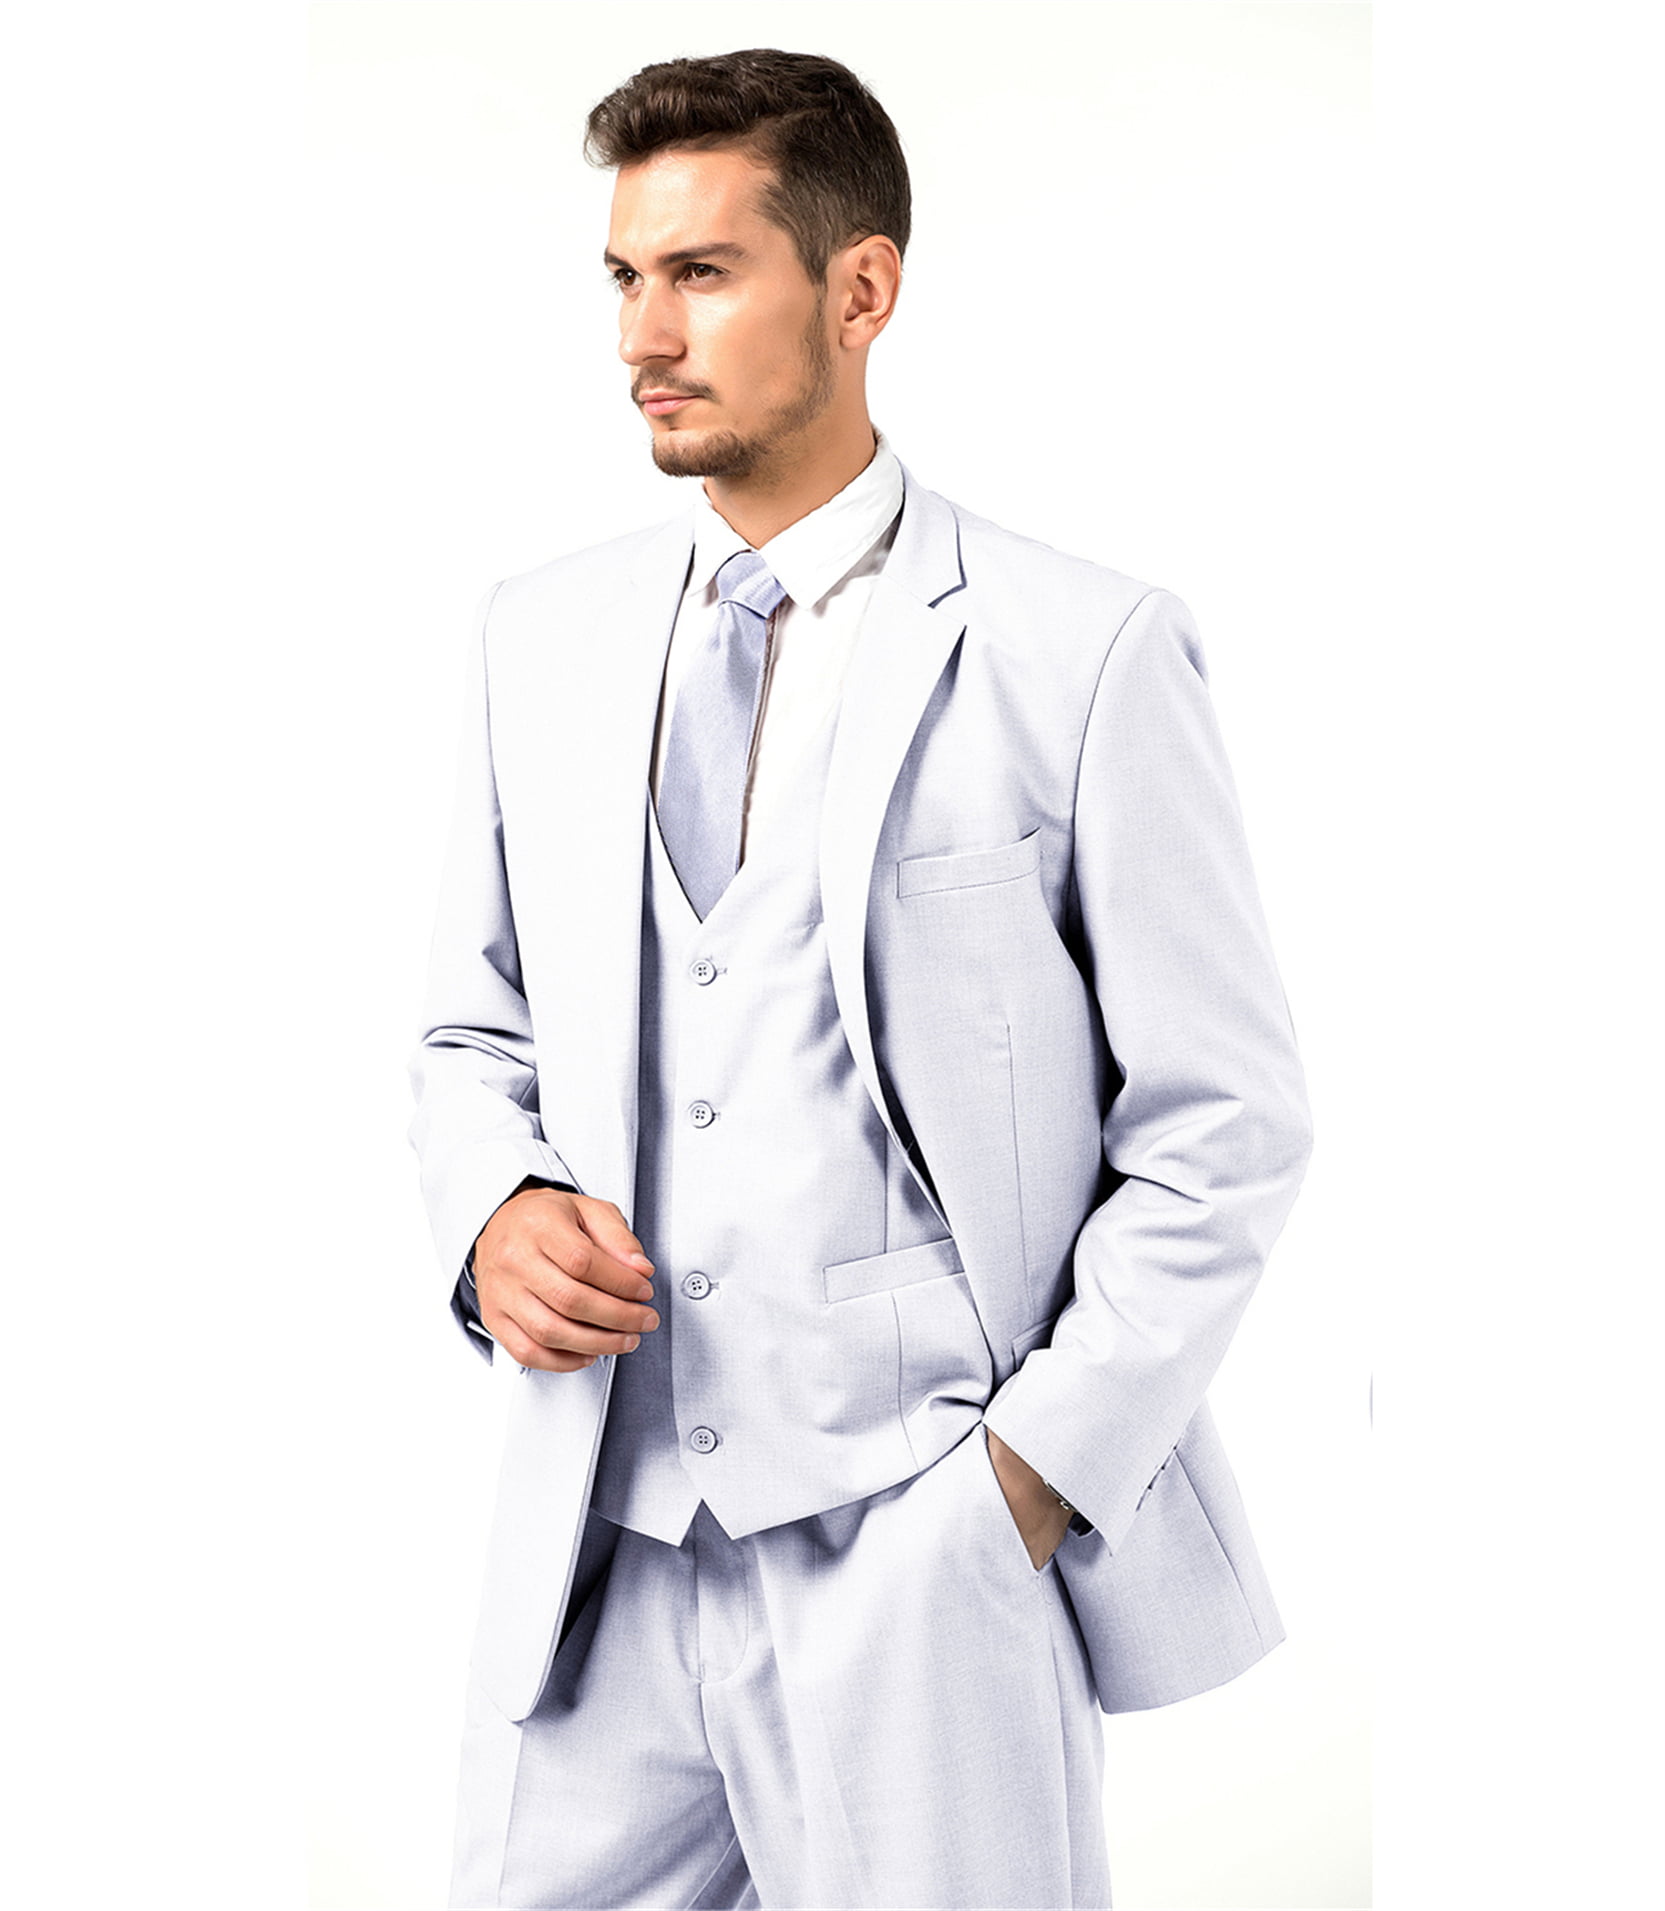 Generic Fashion Men Suit 3 Pieces Slim Fit Wedding Prom Suit